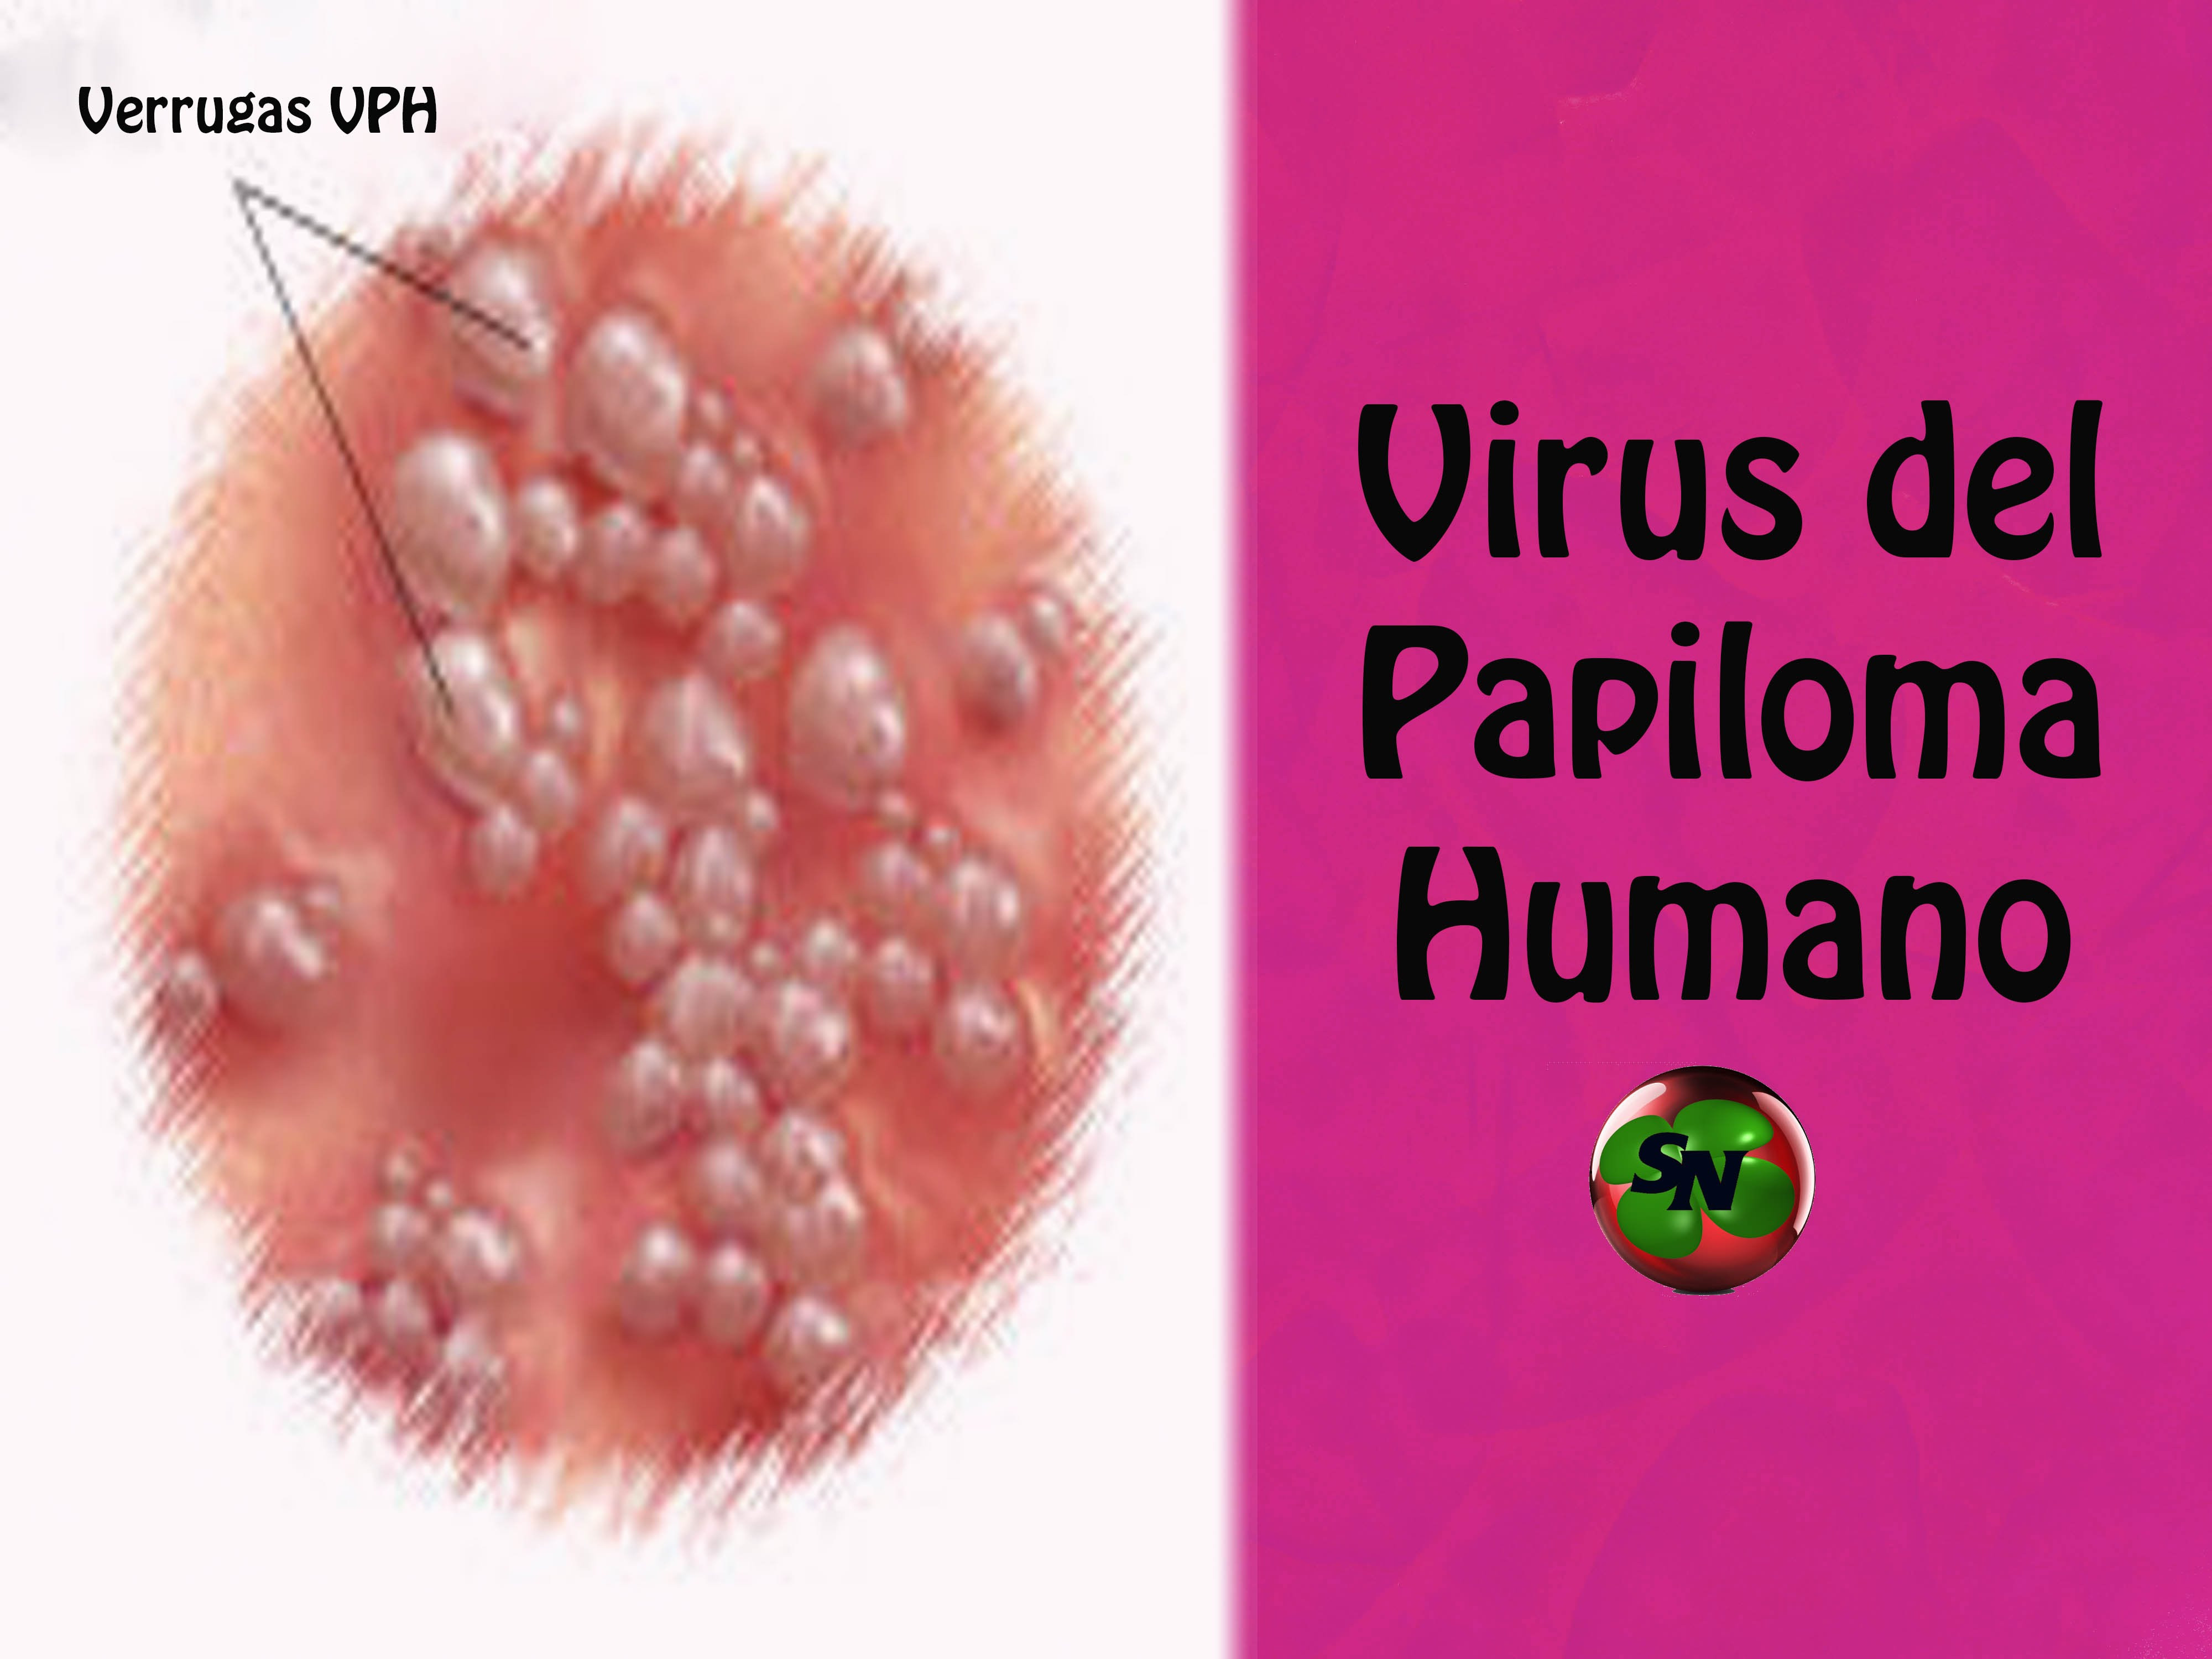 Virus del papiloma sintomas en mujeres - Hpv en mujeres imagenes